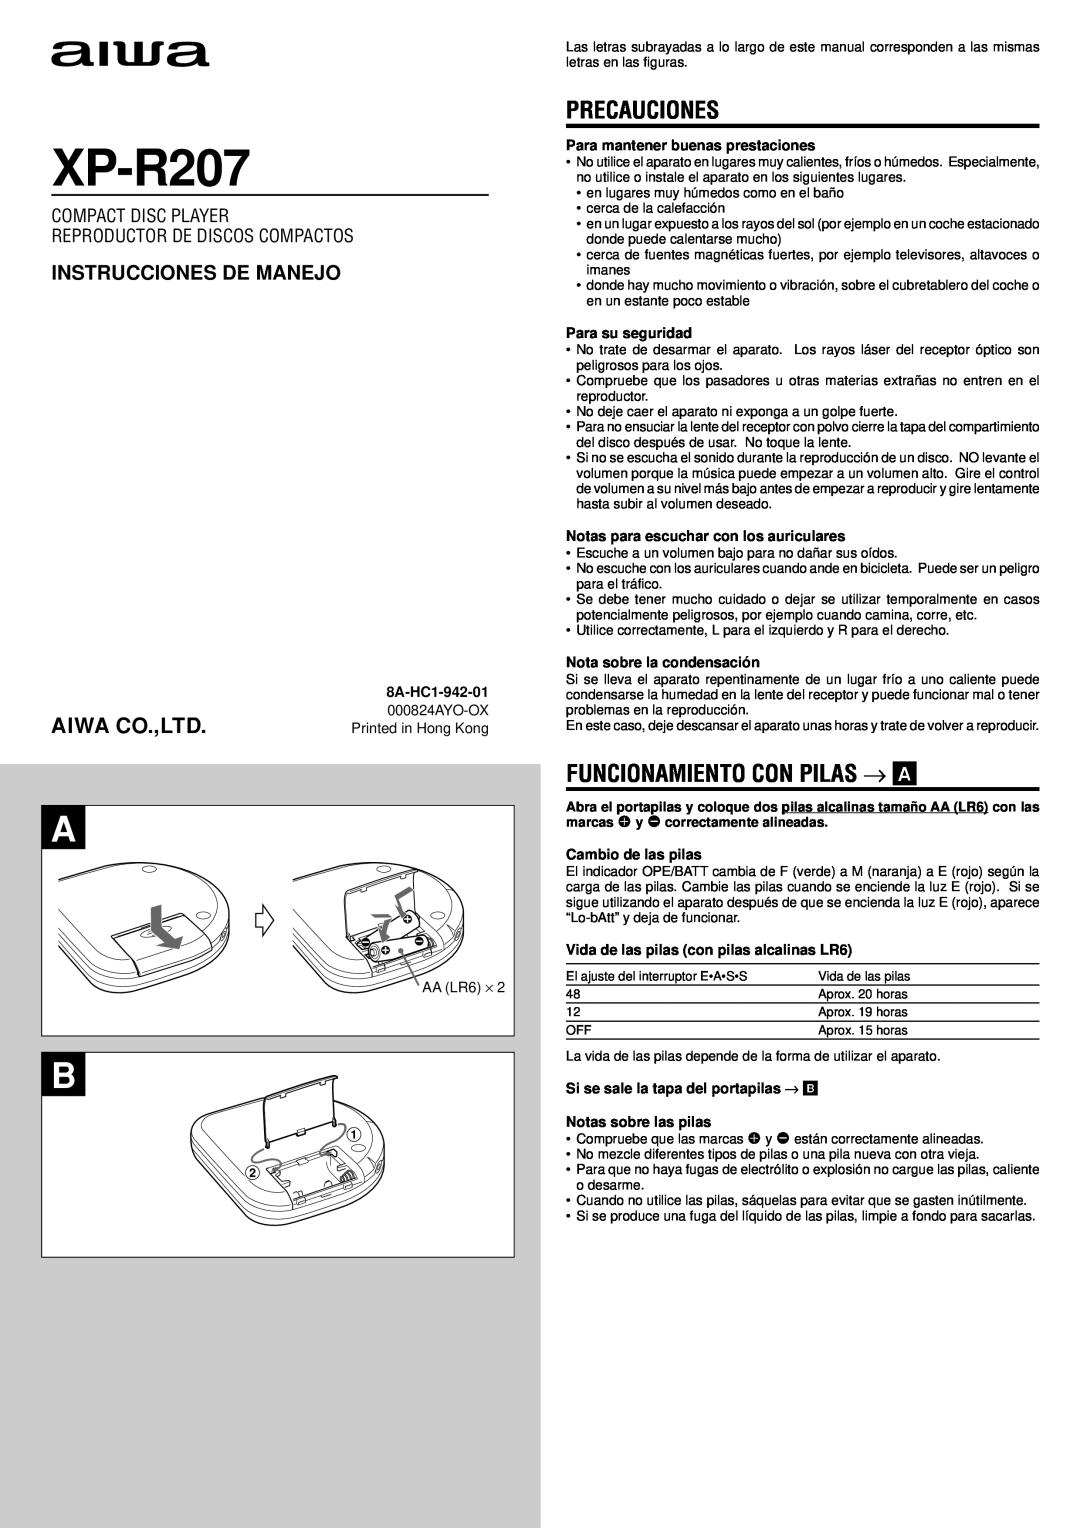 Aiwa XP-R207 manual Precauciones, Funcionamiento Con Pilas → A, Instrucciones De Manejo, Reproductor De Discos Compactos 